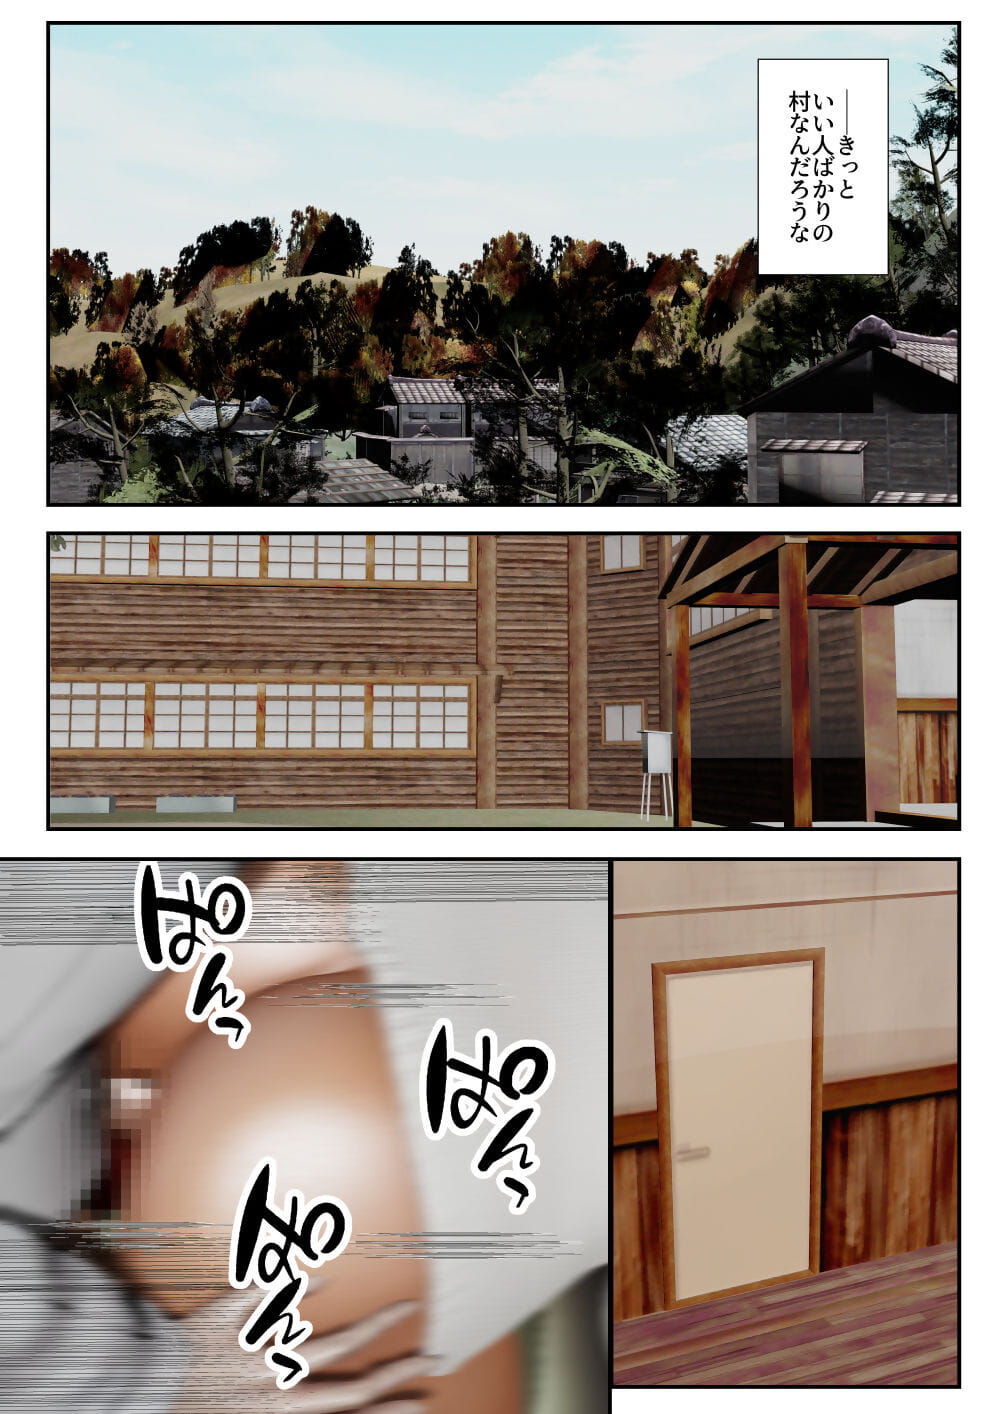 Goriramu Touma kenshi shiriizu Demon Swordsman Series - part 6 page 1